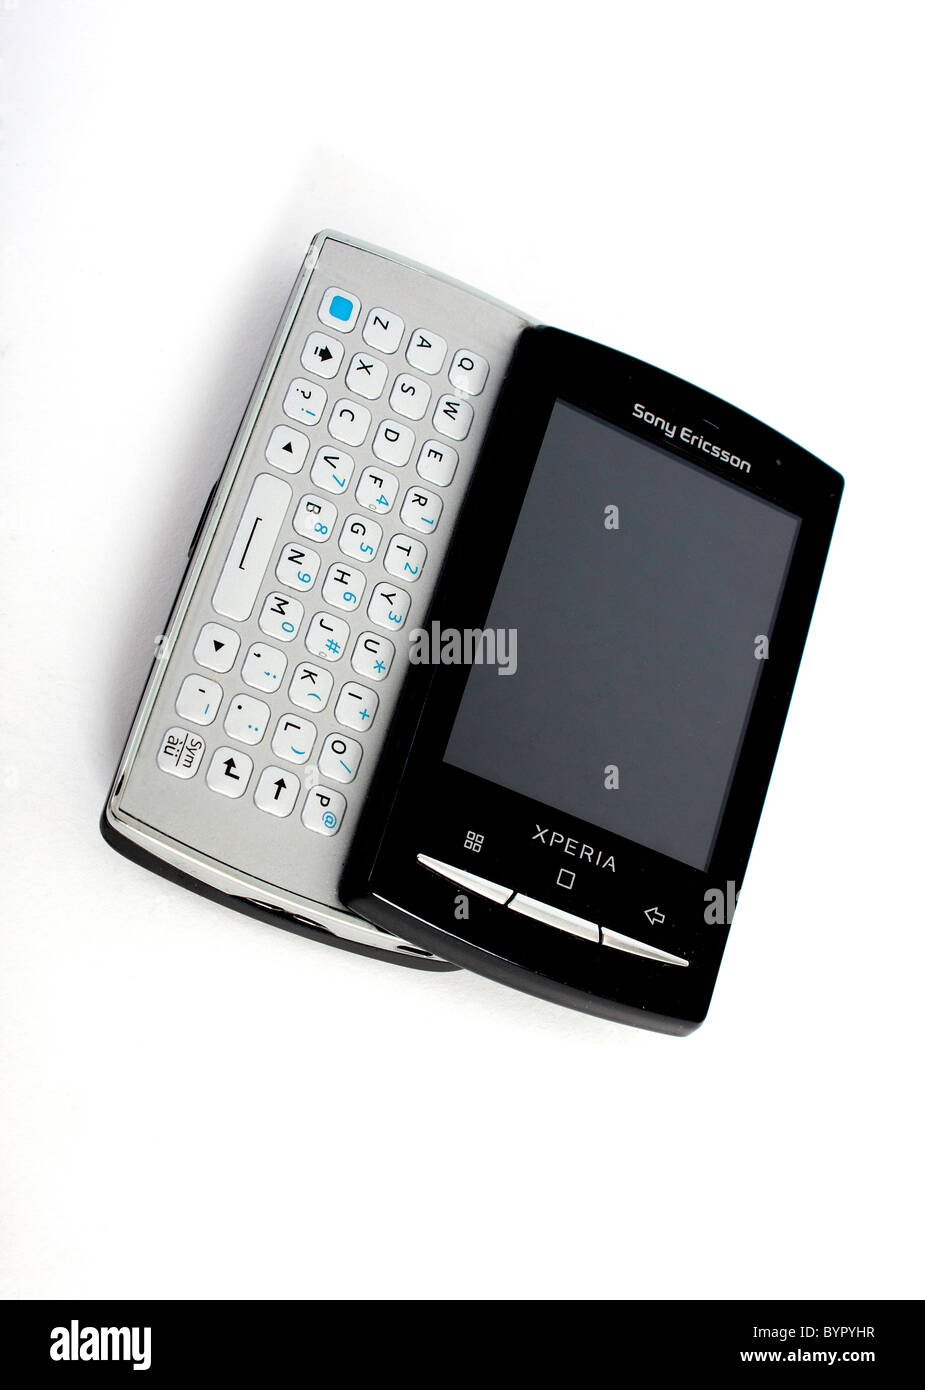 Le nouveau Sony Ericsson Xperia mini pro téléphone mobile avec clavier  QWERTY complet coulissant out ; afficher un écran vide Photo Stock - Alamy